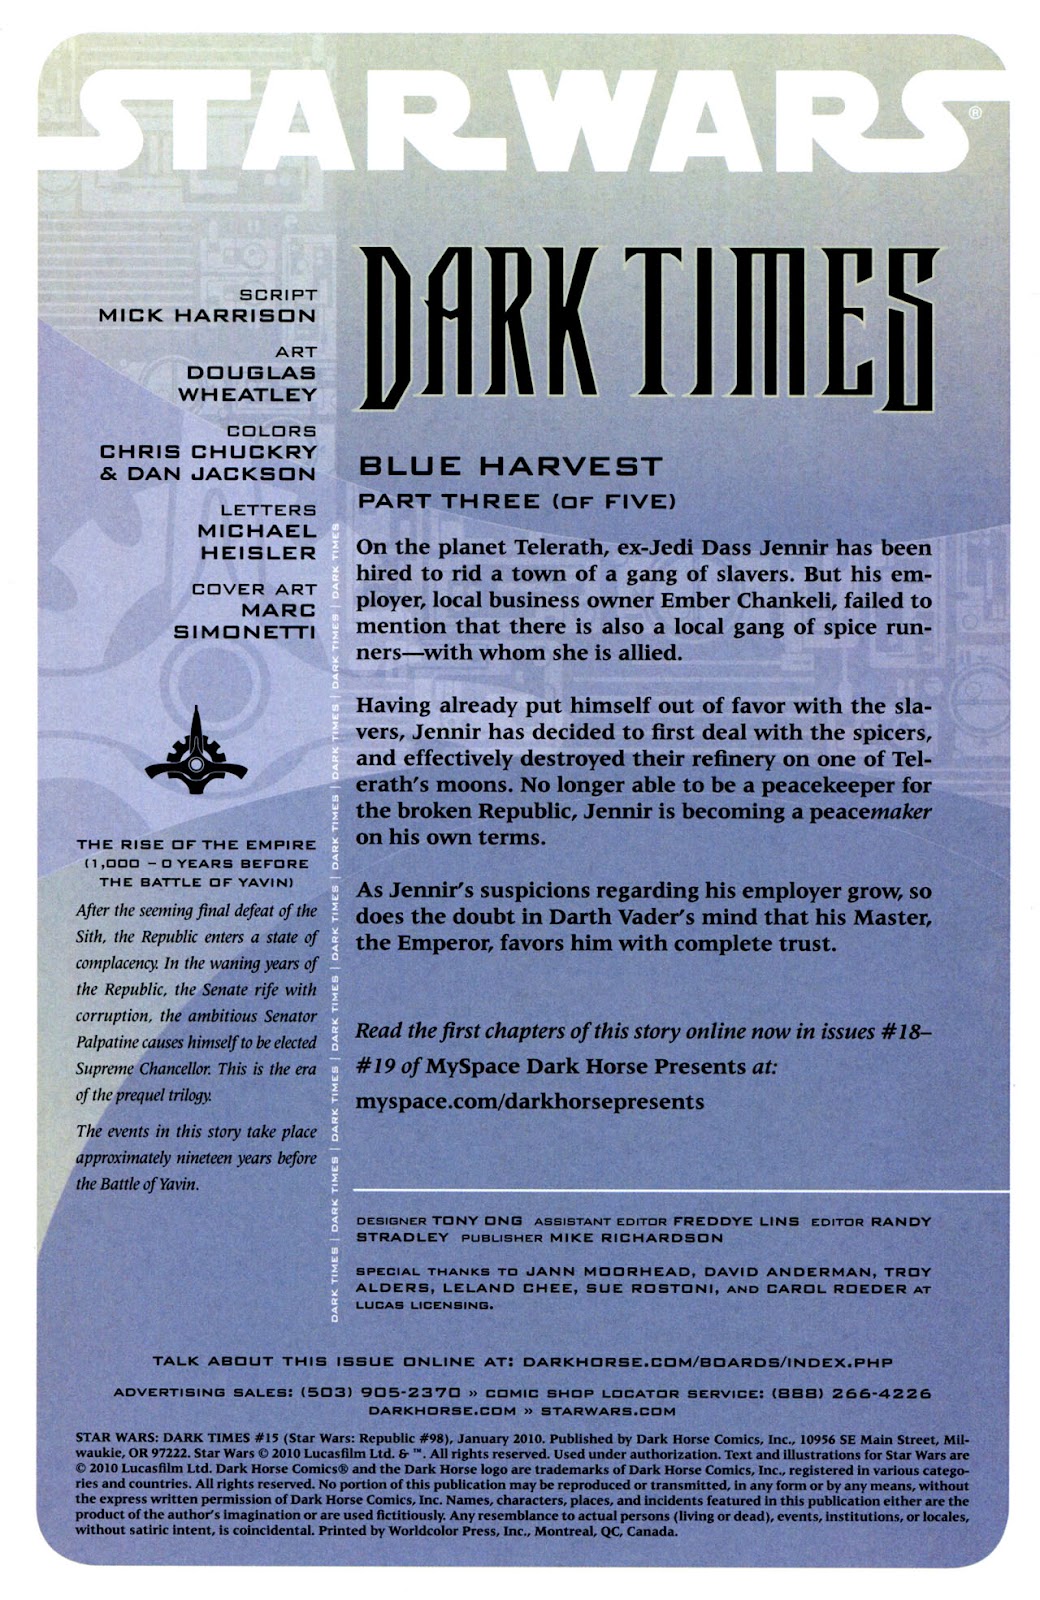 Star Wars: Dark Times issue 15 - Blue Harvest, Part 3 - Page 2